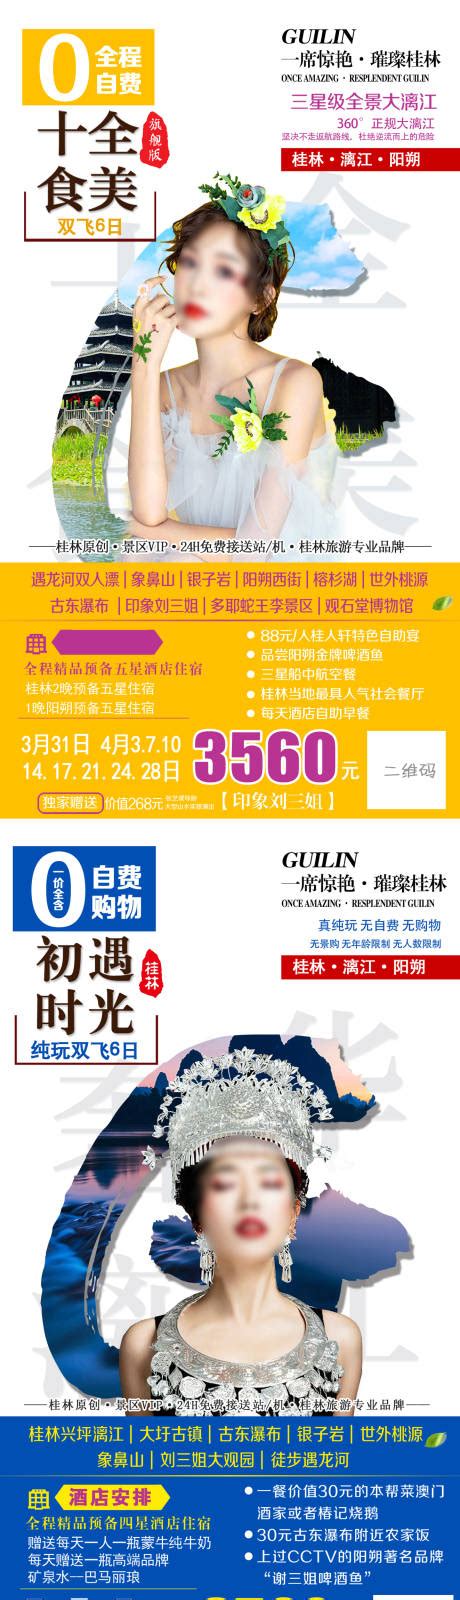 燃爆桂林旅游海报PSD广告设计素材海报模板免费下载-享设计